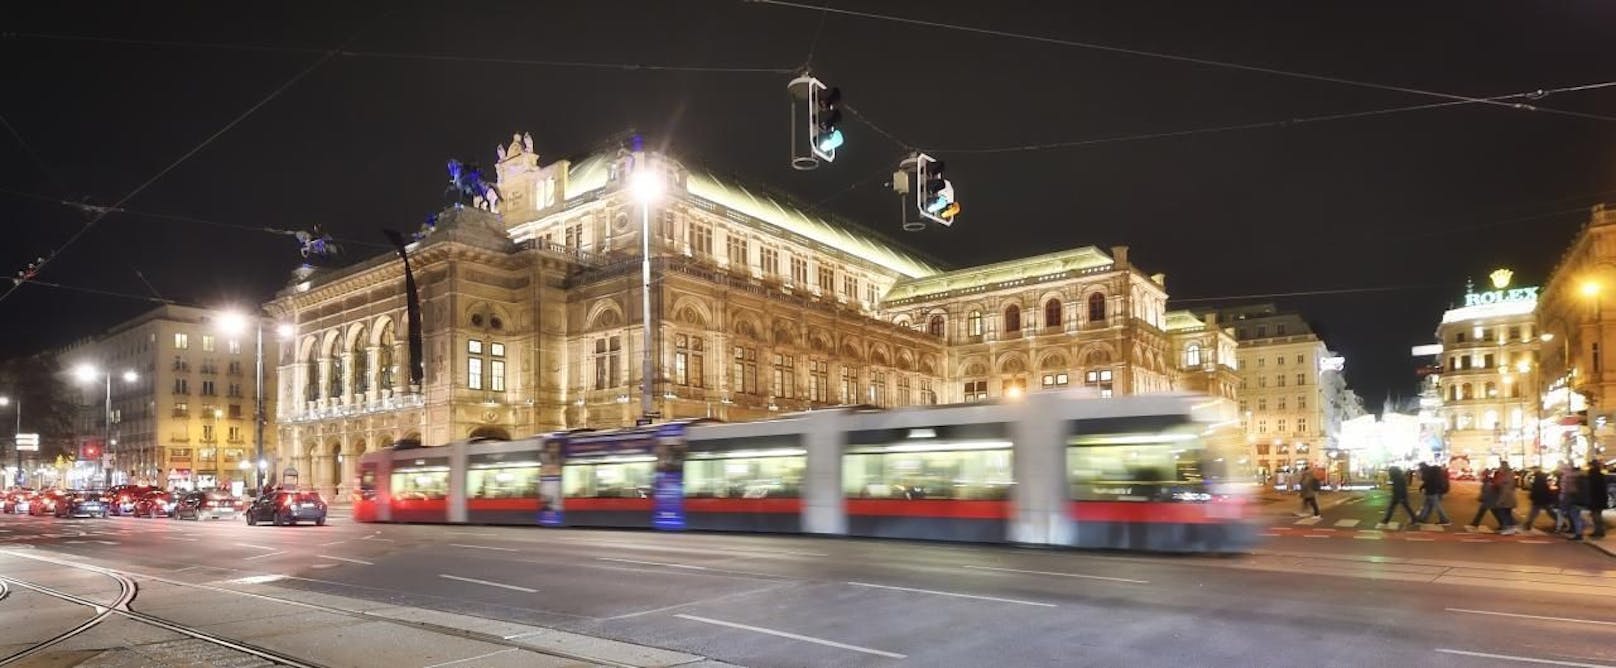 Die Wiener Linien verlängern am 31. Dezember ihre Betriebszeiten, damit Du sicher und bequem ins neue Jahrzehnt fahren kannst. 